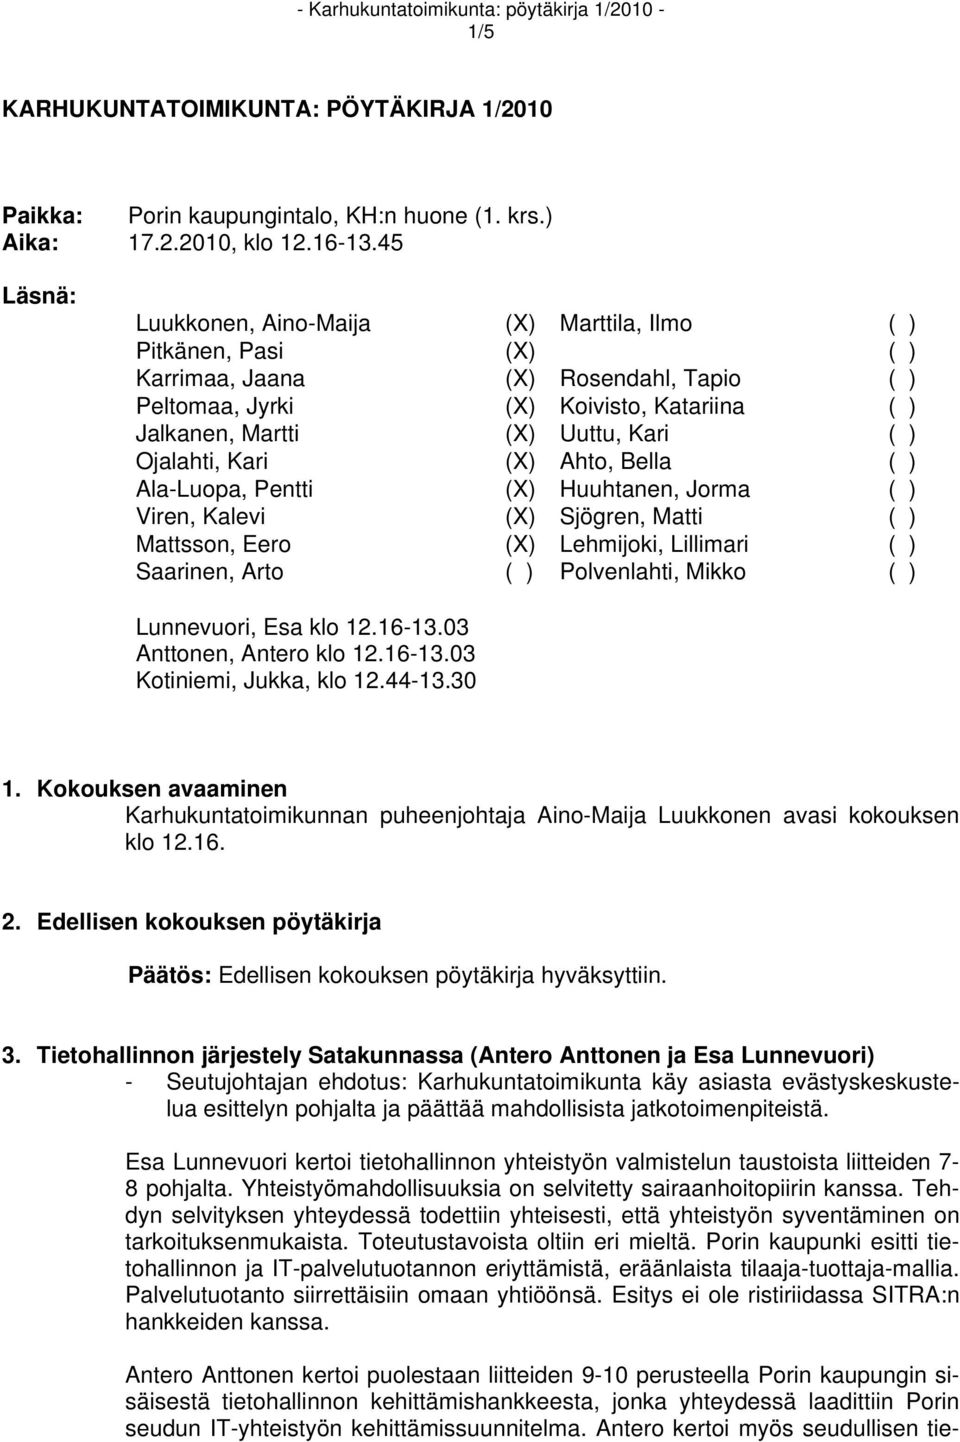 Ojalahti, Kari (X) Ahto, Bella ( ) Ala-Luopa, Pentti (X) Huuhtanen, Jorma ( ) Viren, Kalevi (X) Sjögren, Matti ( ) Mattsson, Eero (X) Lehmijoki, Lillimari ( ) Saarinen, Arto ( ) Polvenlahti, Mikko (